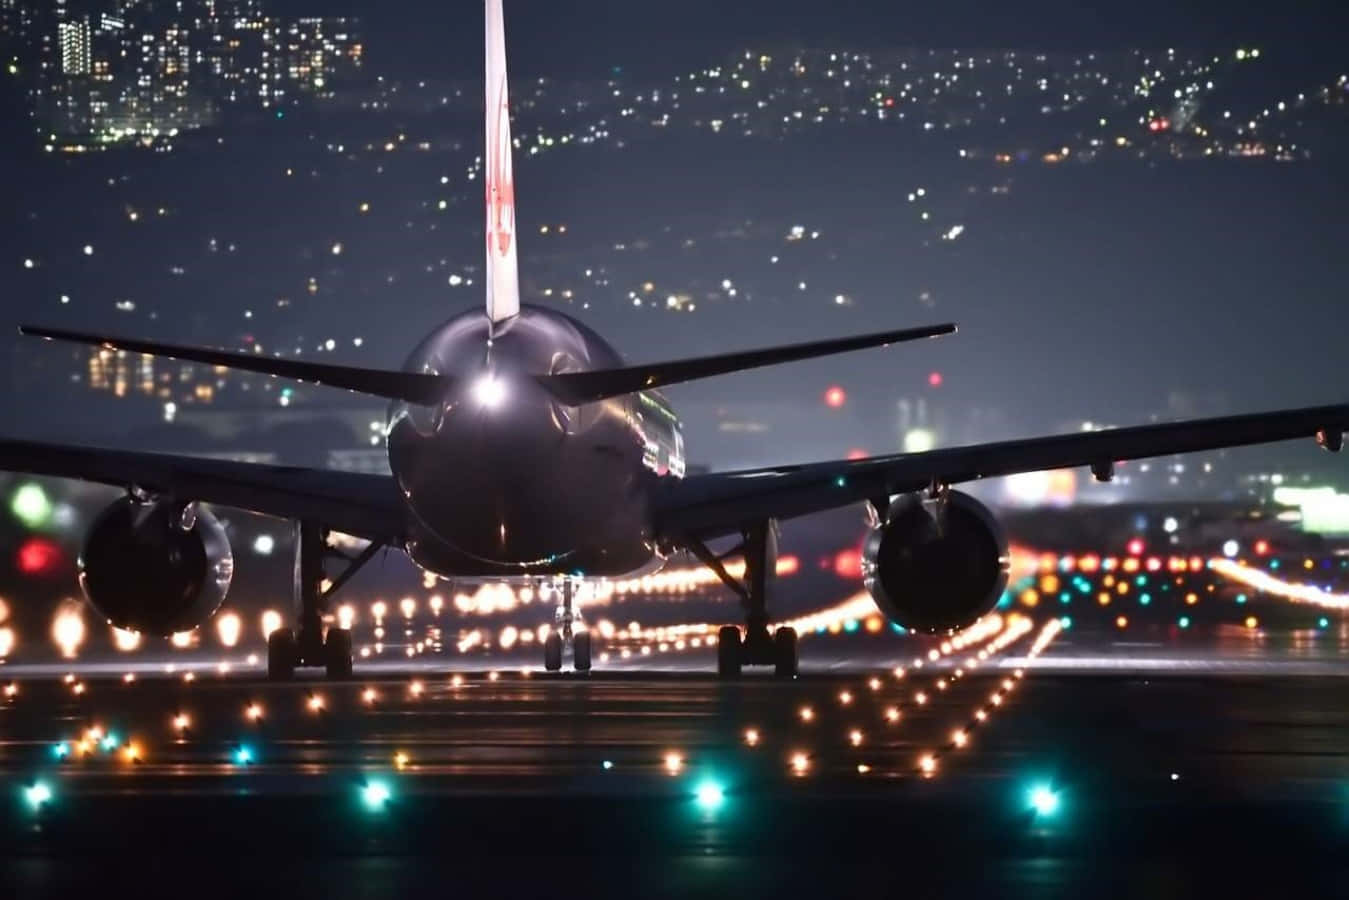 Imágenesde Aviones En La Noche